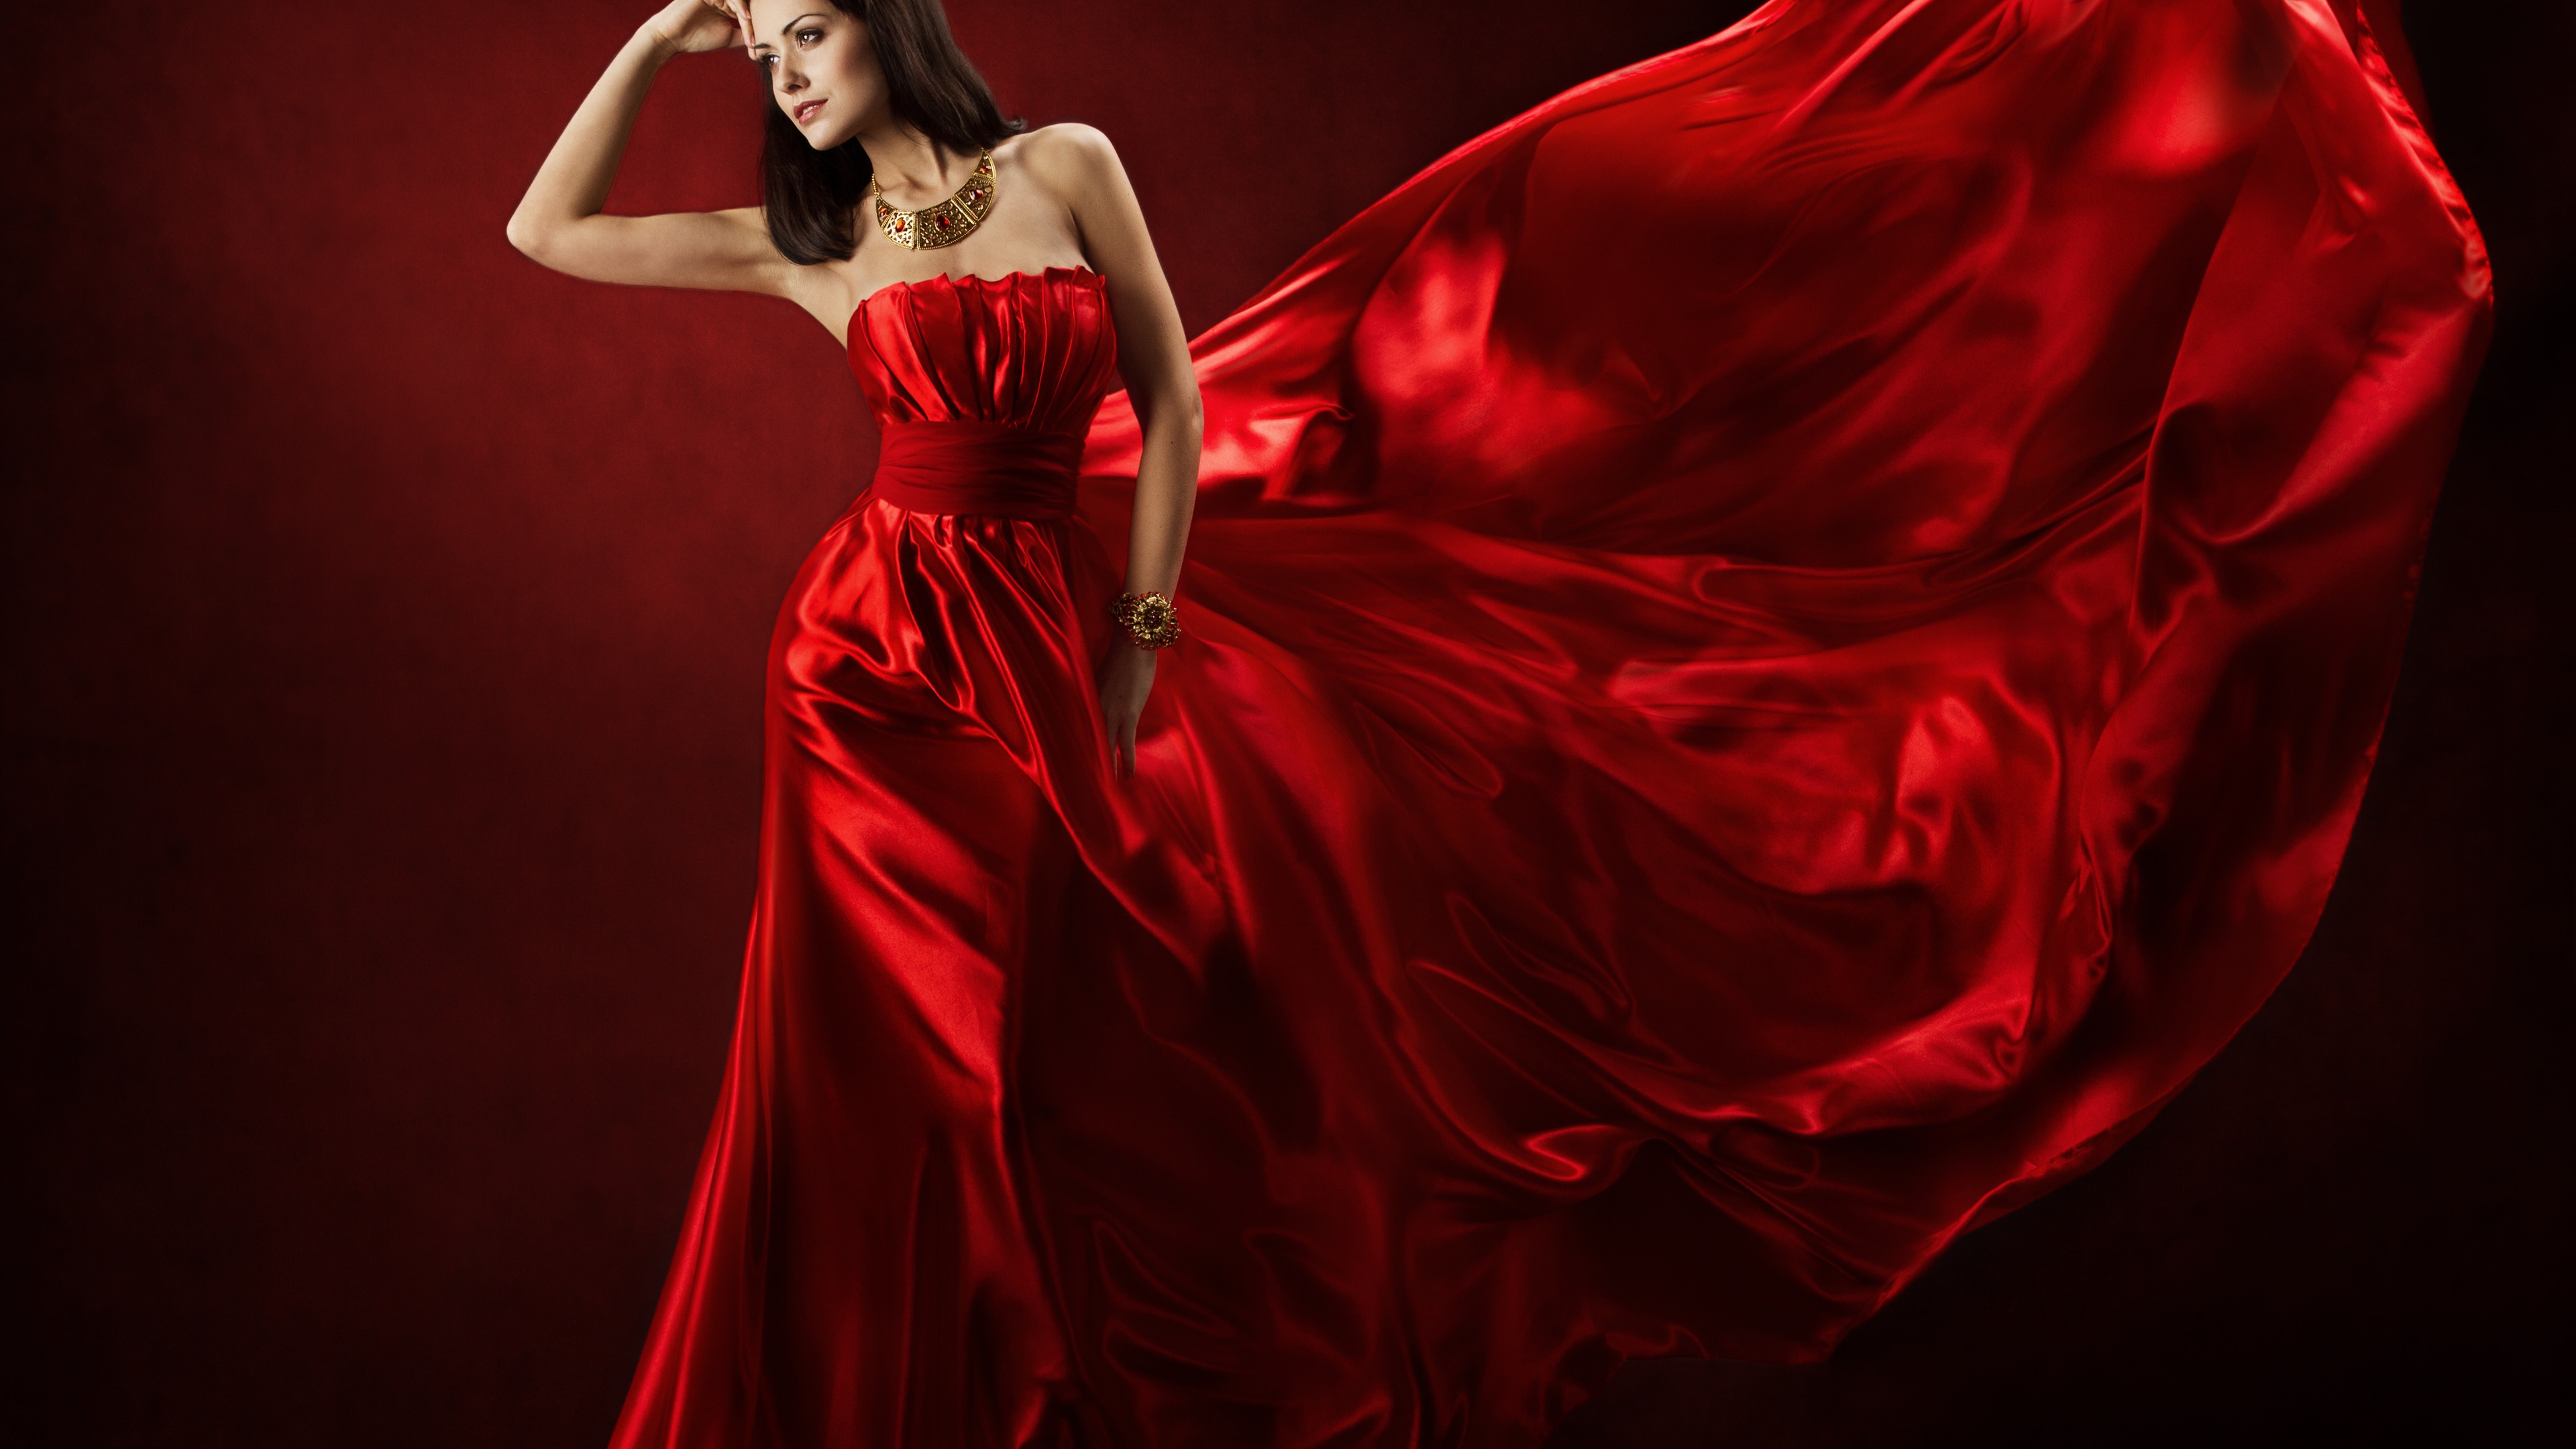 缤纷多彩 红色礼服 美丽 丝绸 女人模特壁纸